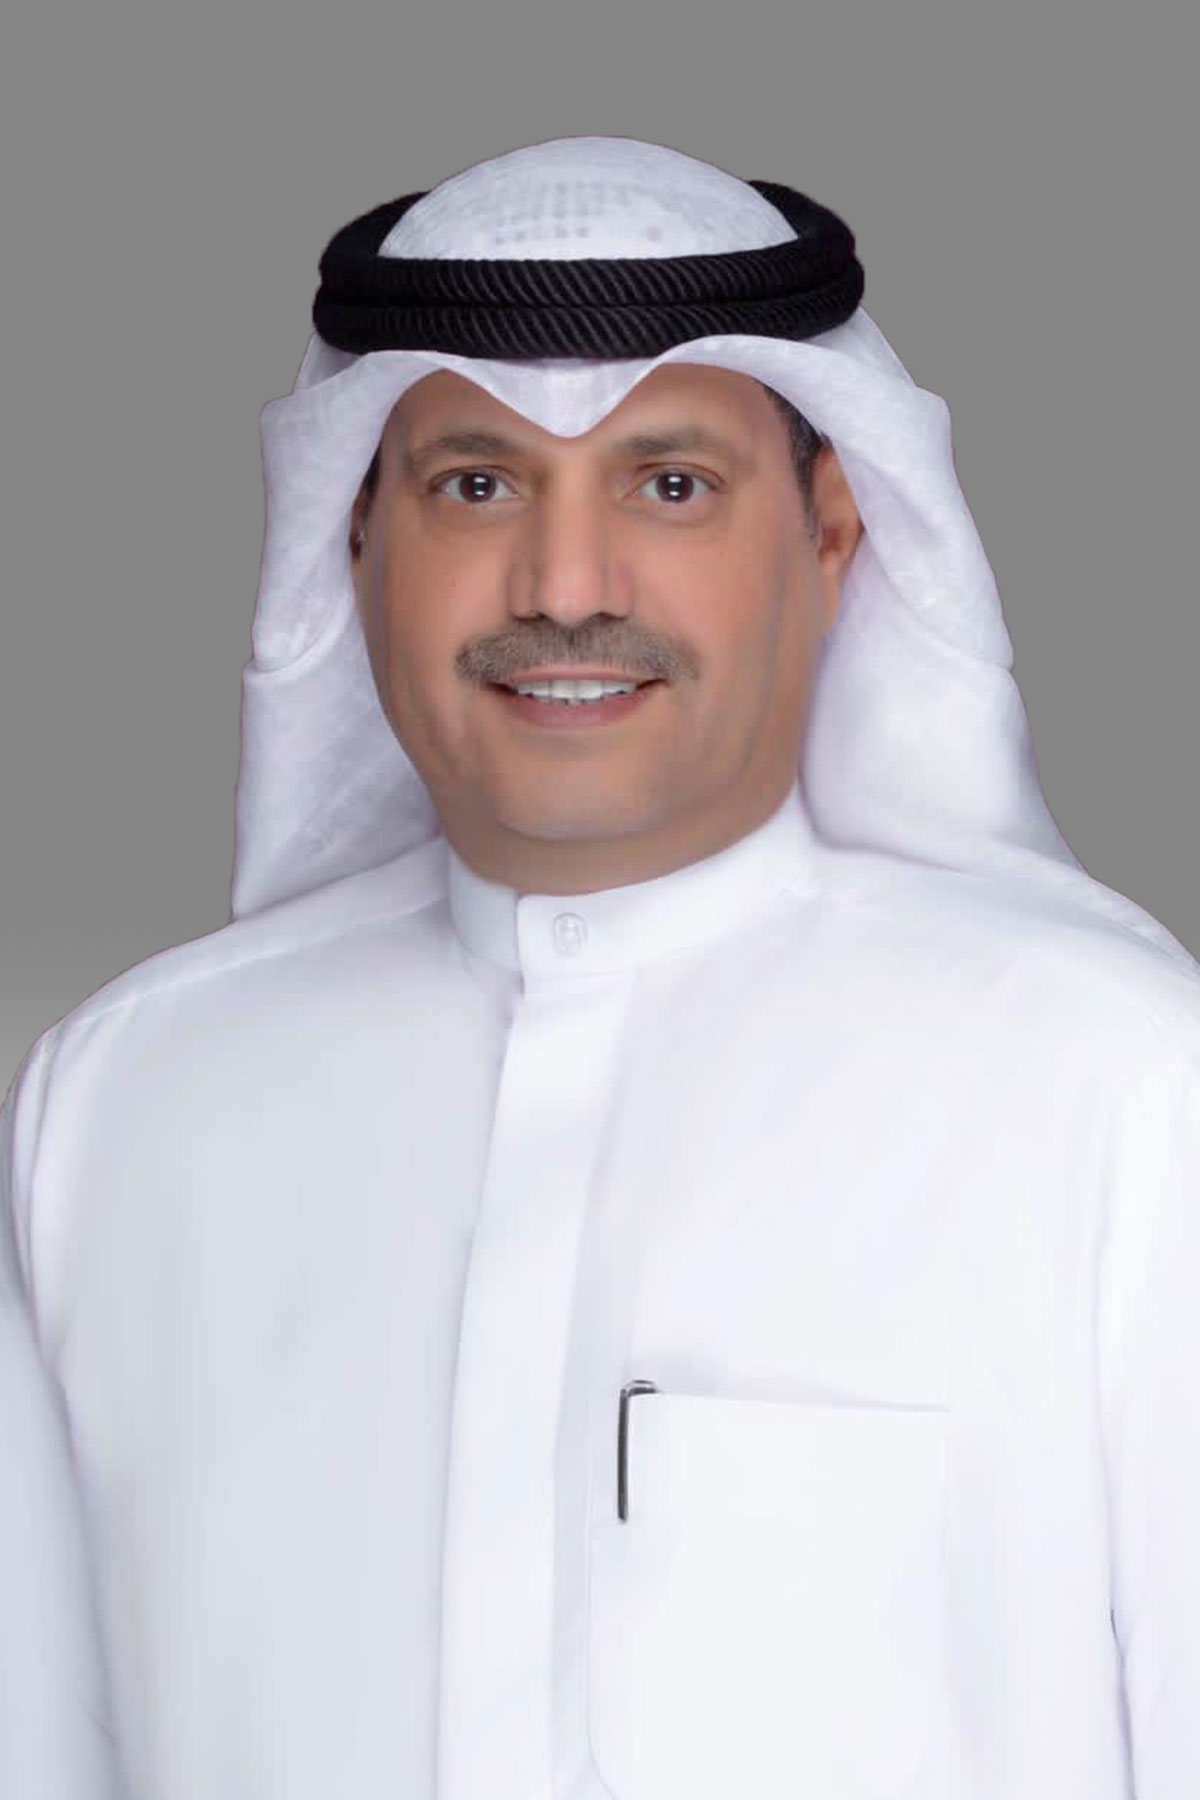 فرز الديحاني يقترح إنشاء مكتبات عامة بجميع مناطق الكويت مزودة بكتب في جميع المجالات